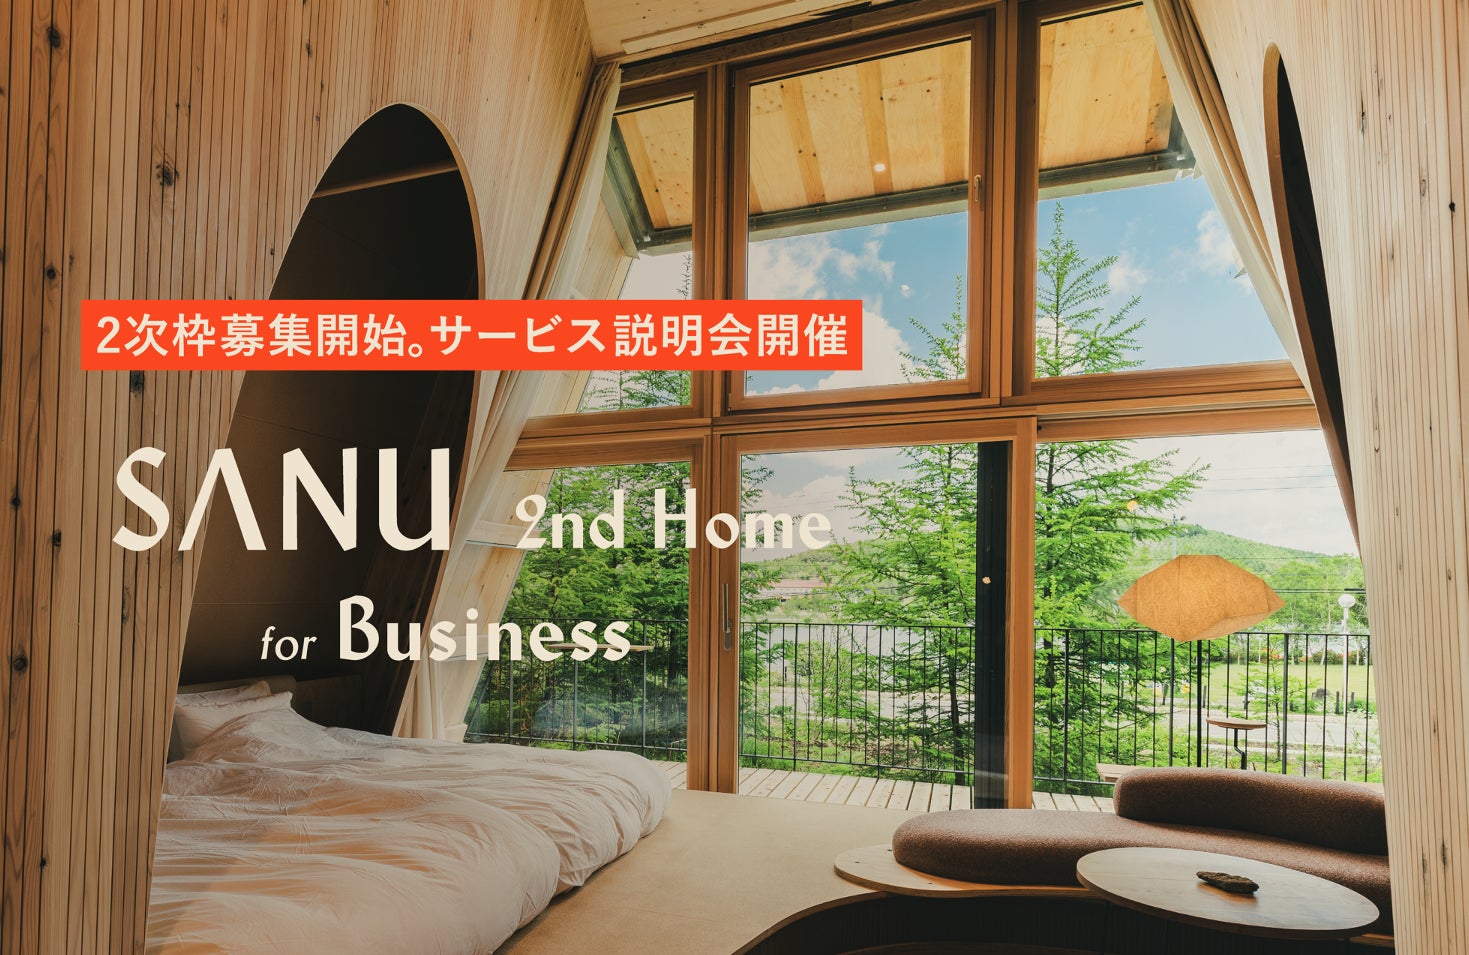 法人向けサービス「SANU 2nd Home for Business 」1次枠完売、秋から利用開始の2次枠を先着順で募集開始